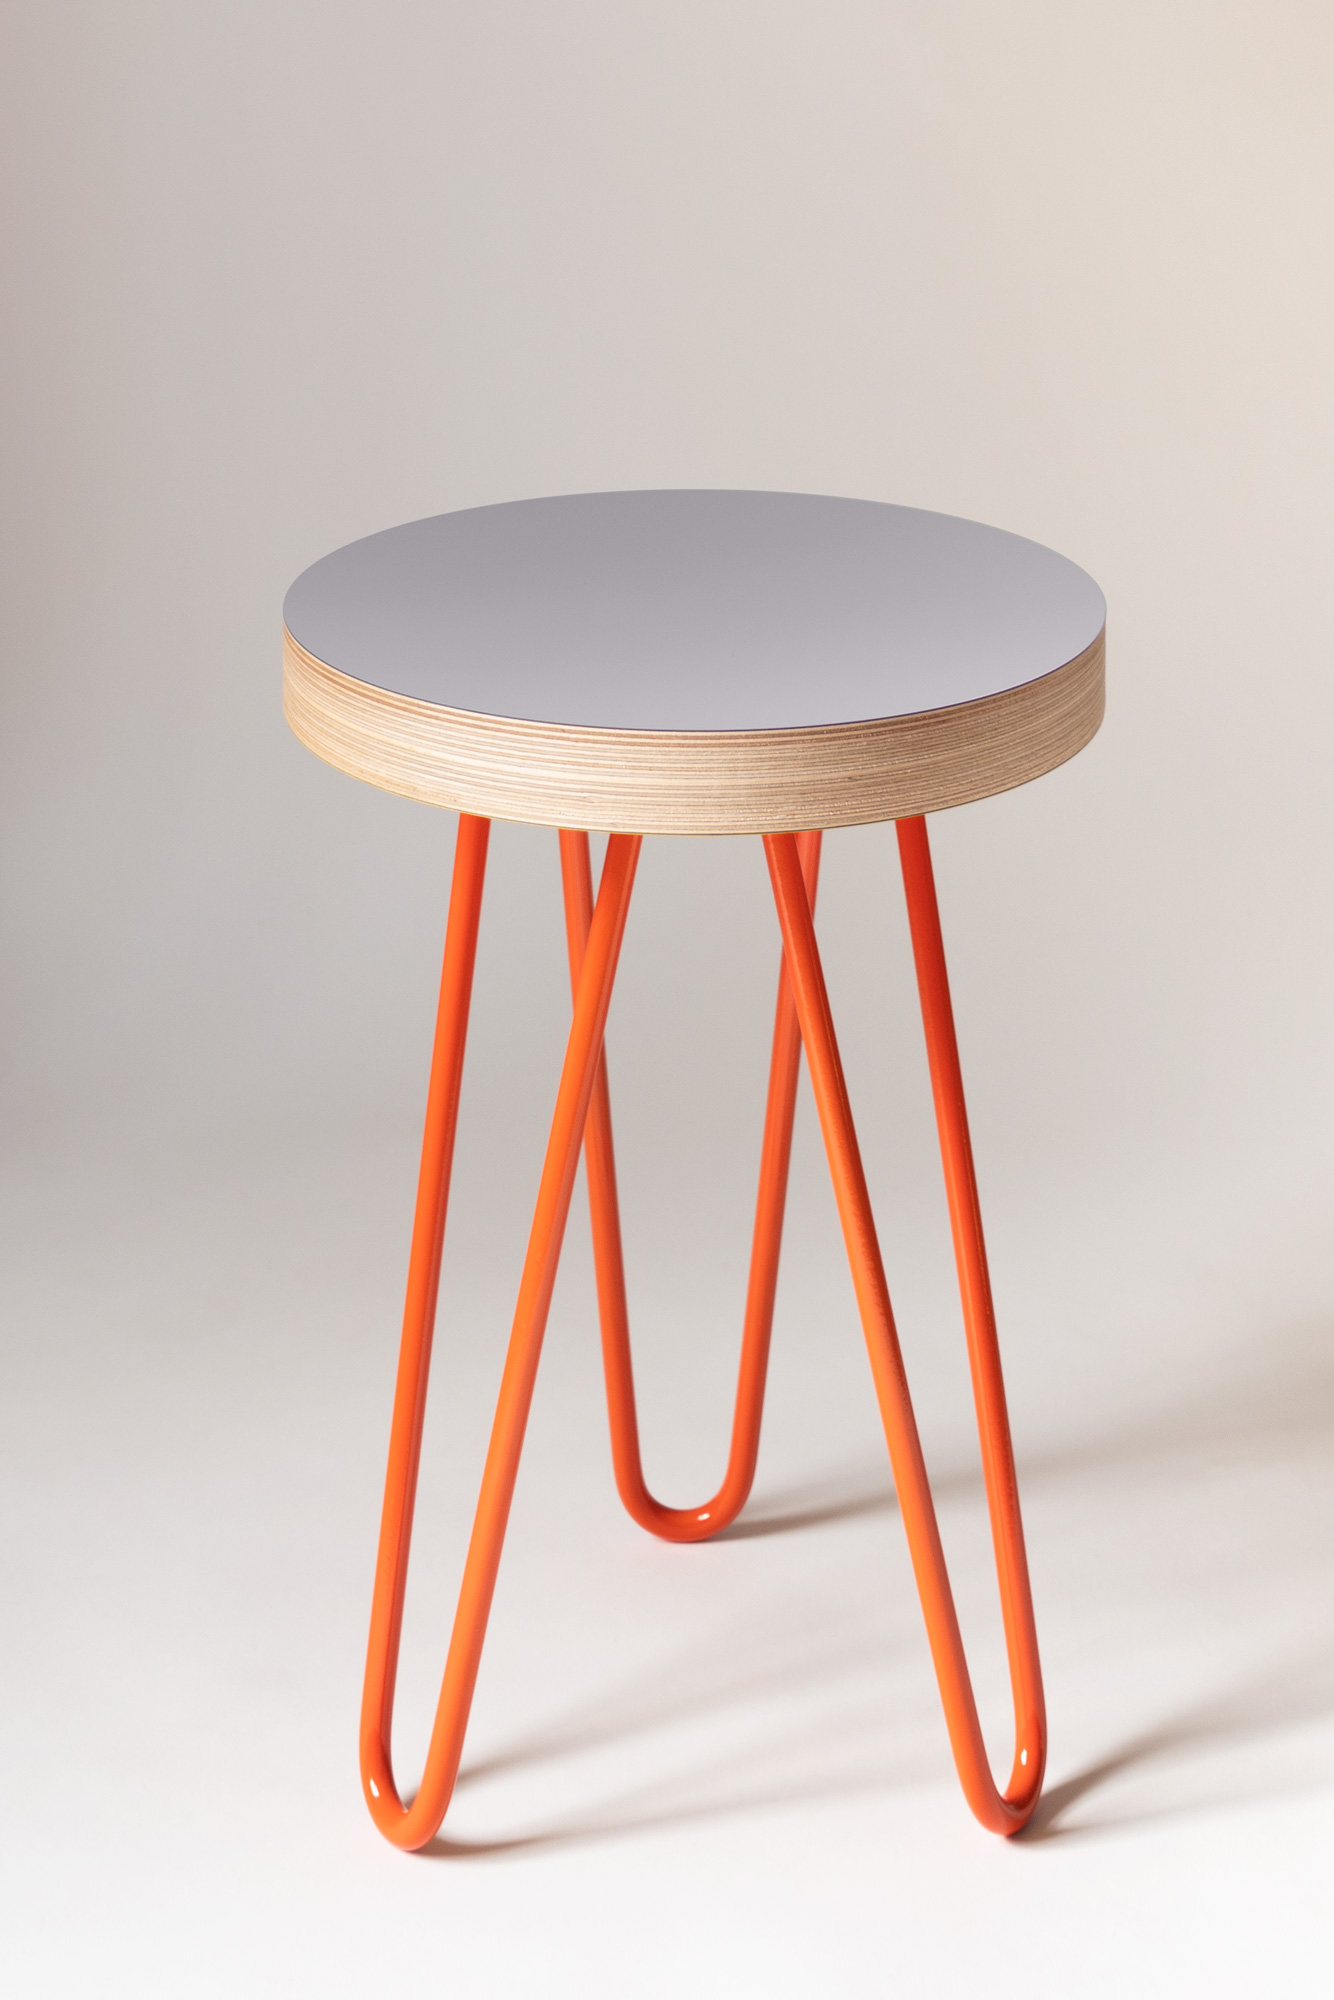 Ace-Reno-Side-Table-Grey-Top-Orange-Legs